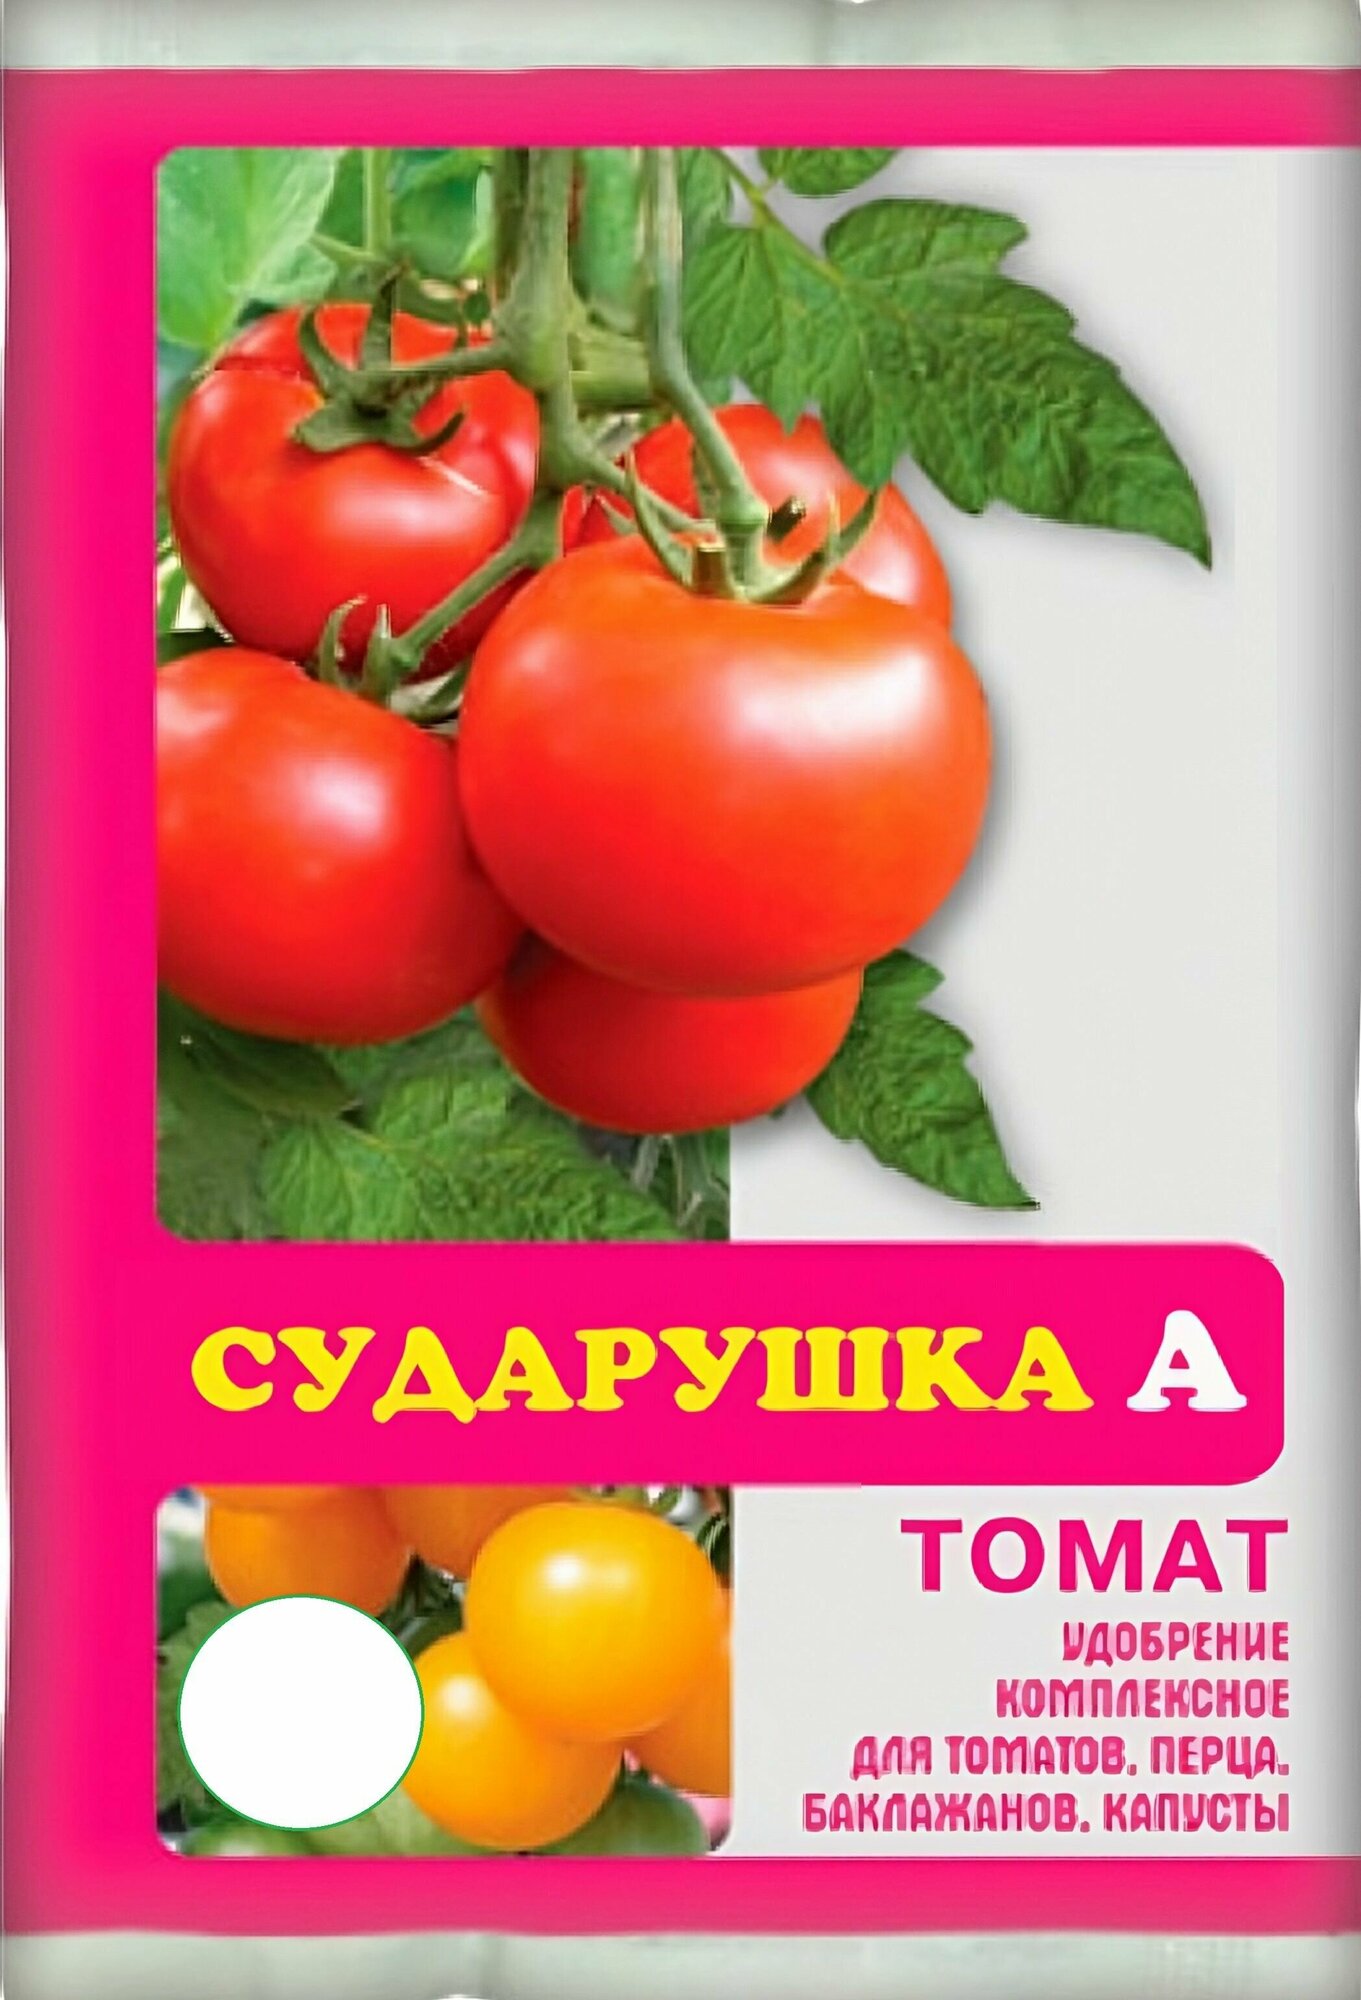 Удобрение для томатов комплексное "Сударушка" 60 г, также подходит для перцев, баклажанов и других овощных культур. Стимулирует рост плодов, повышает их вкусовую ценность - фотография № 1